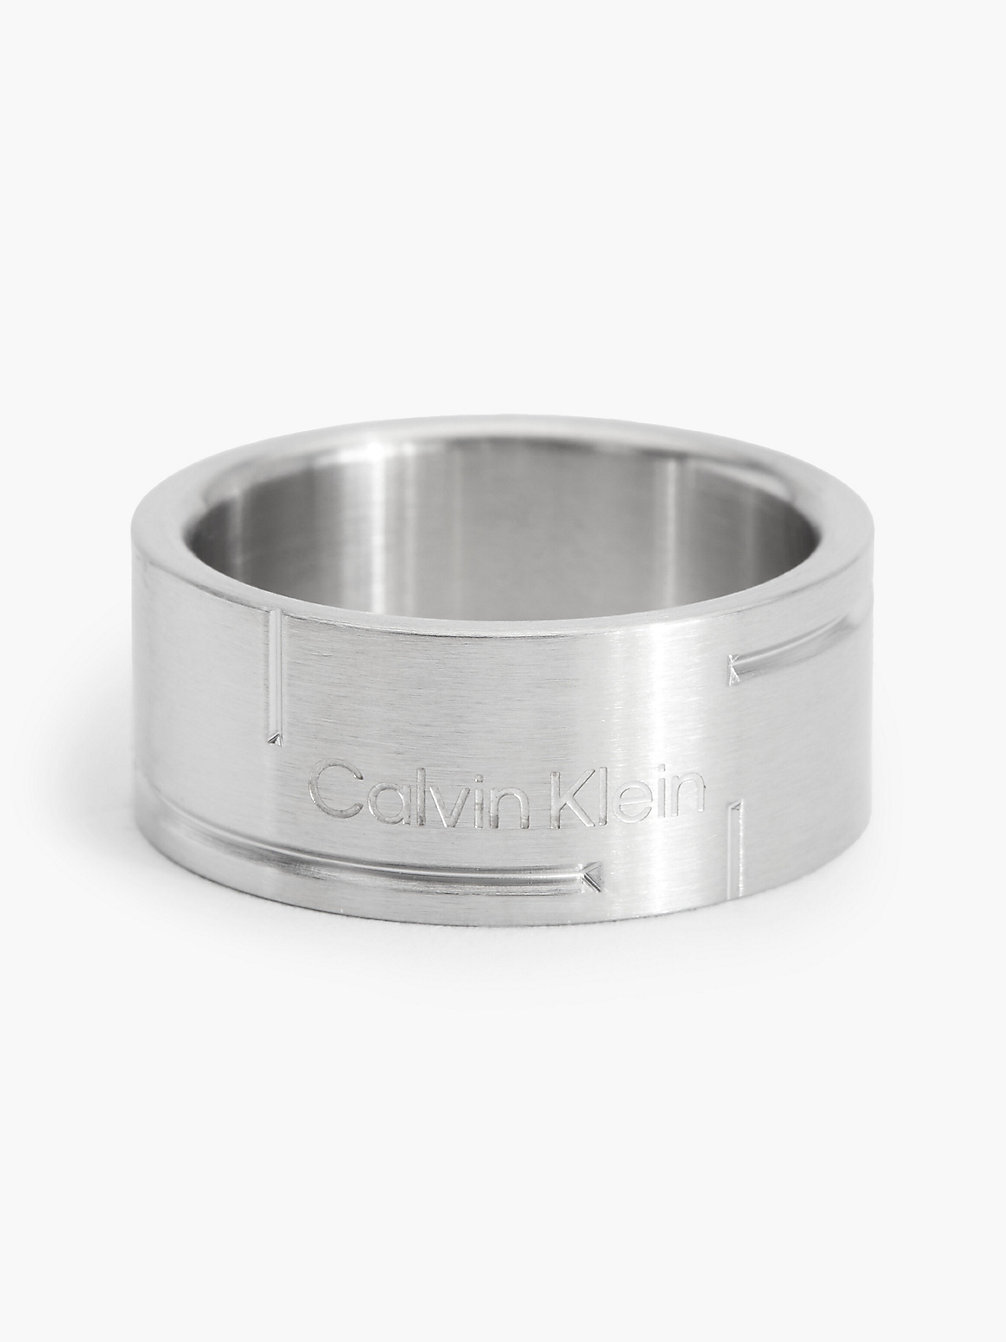 SILVER Ring - Grid undefined men Calvin Klein